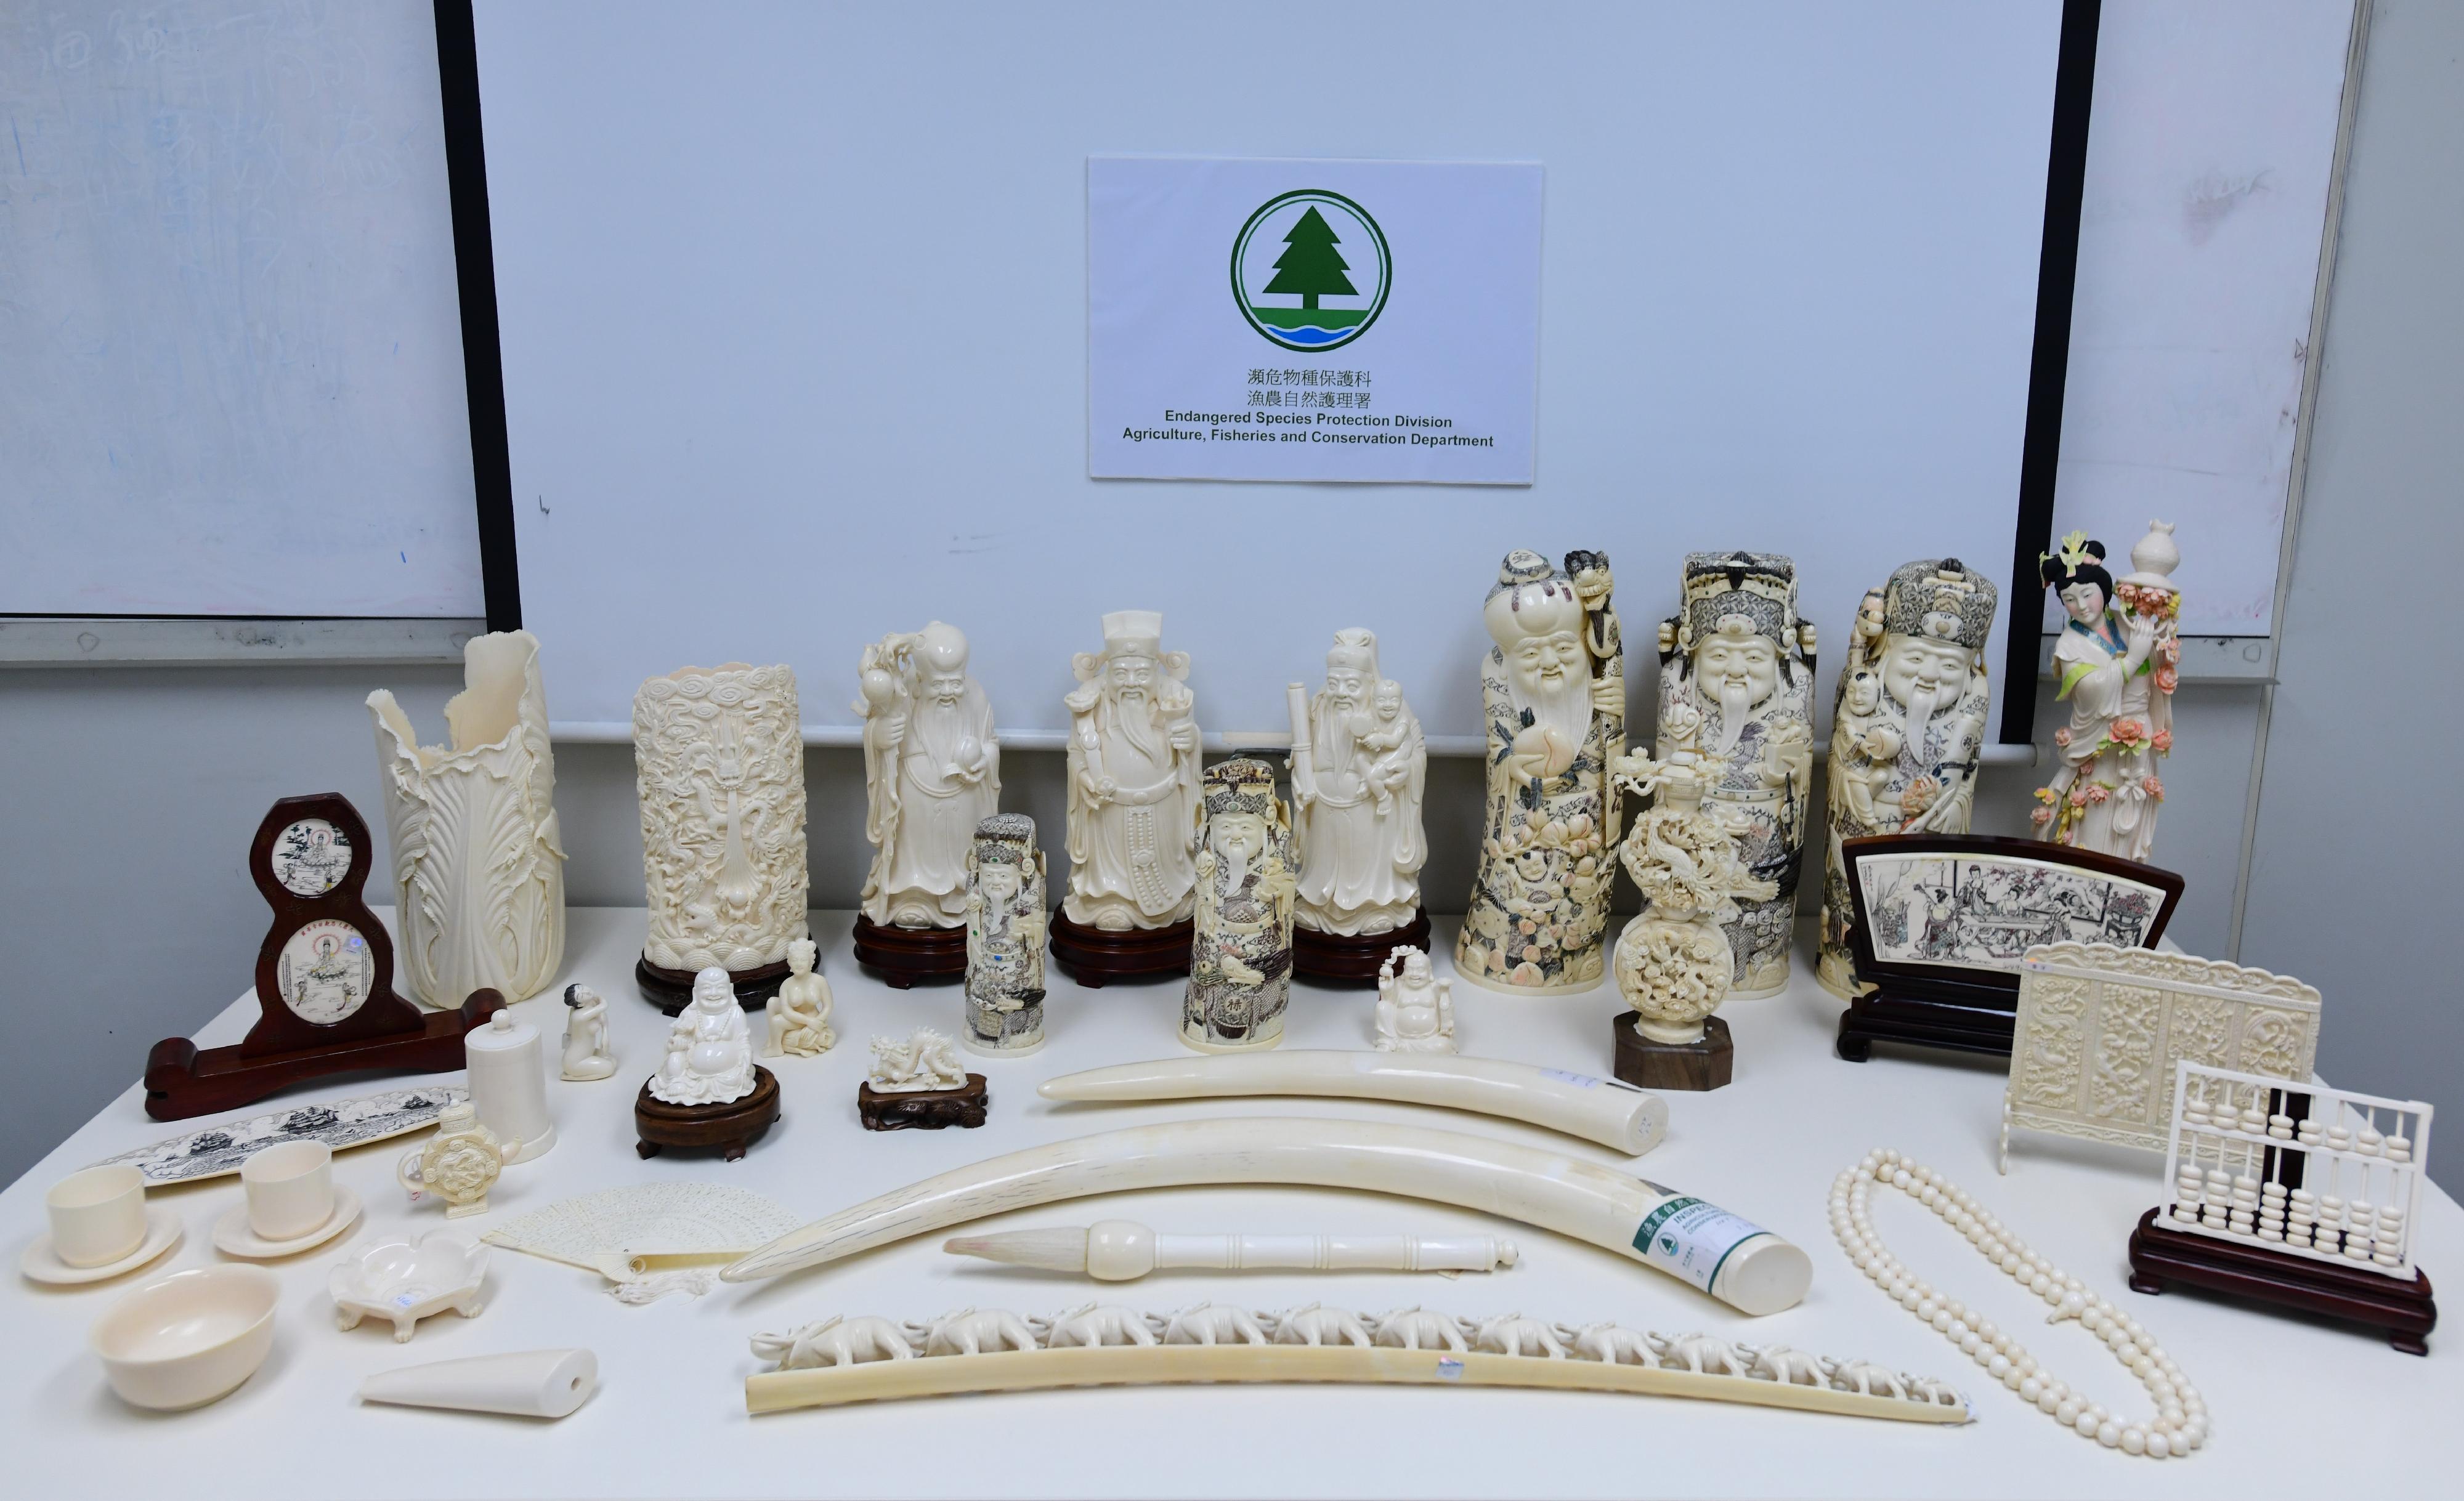 漁農自然護理署昨日（七月二十七日）在油尖旺區一間店鋪檢獲284件懷疑象牙製品。圖示部分檢獲的懷疑象牙製品。